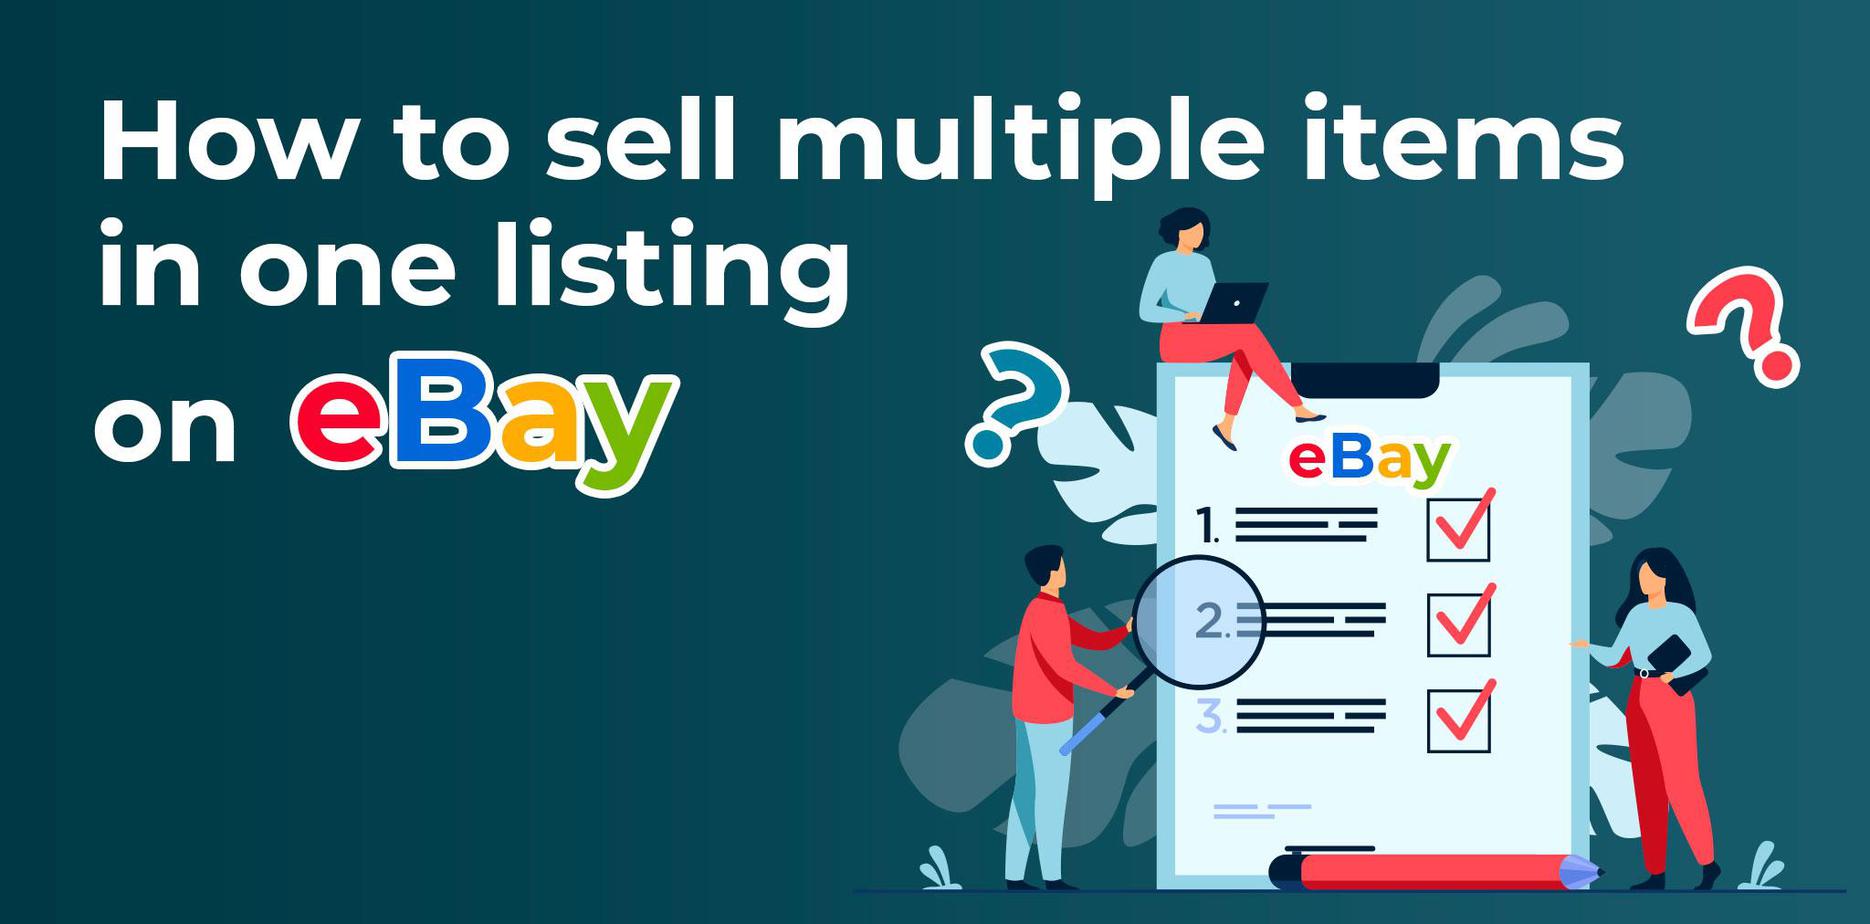 Listing multiple items on eBay